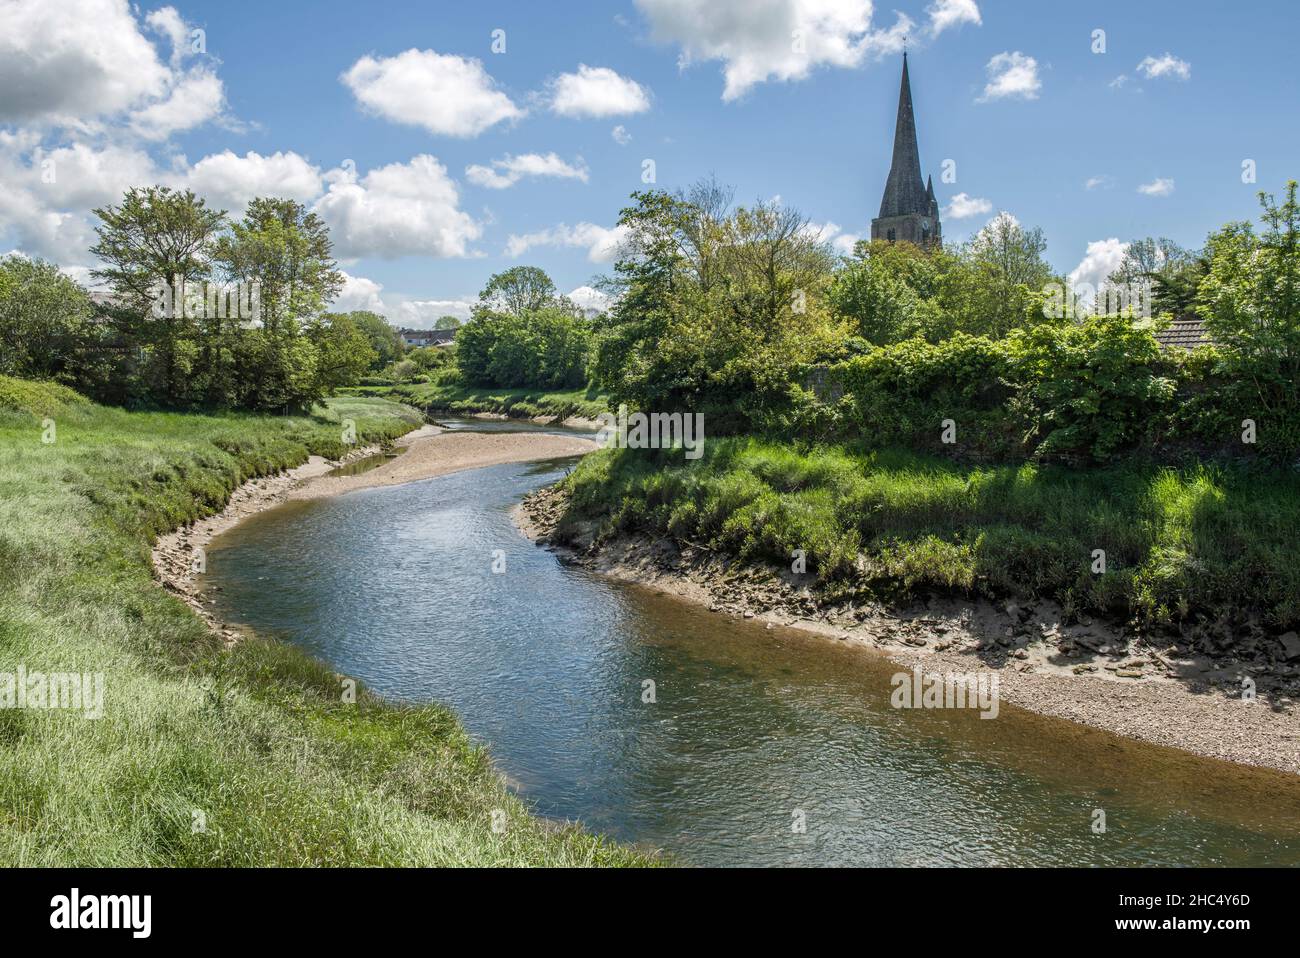 Il fiume, o Afon, Gwendraeth, che sta attraversando il villaggio del Carmarthensshire di Kidwelly (in gallese, Cydweli) Foto Stock